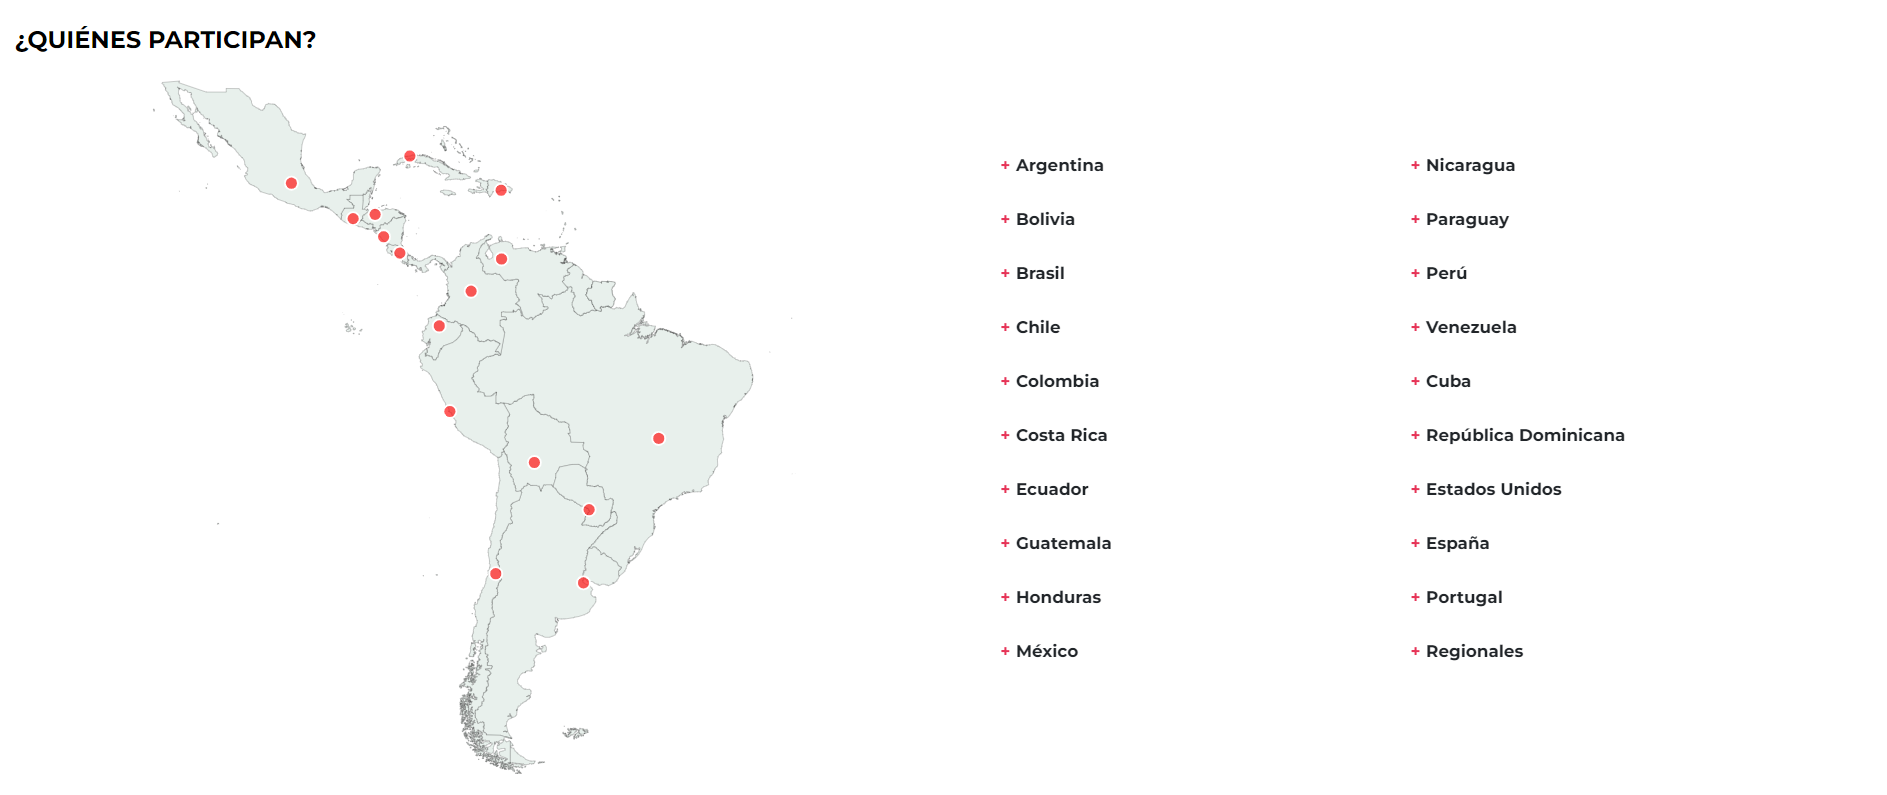 $!Este es el mapa de verificadores de América Latina, según el país. <a rel=nofollow noopener noreferrer href=https://chequeado.com/latamchequea/#/ target=_blank>Click aquí</a> para ver detalladamente el gráfico.